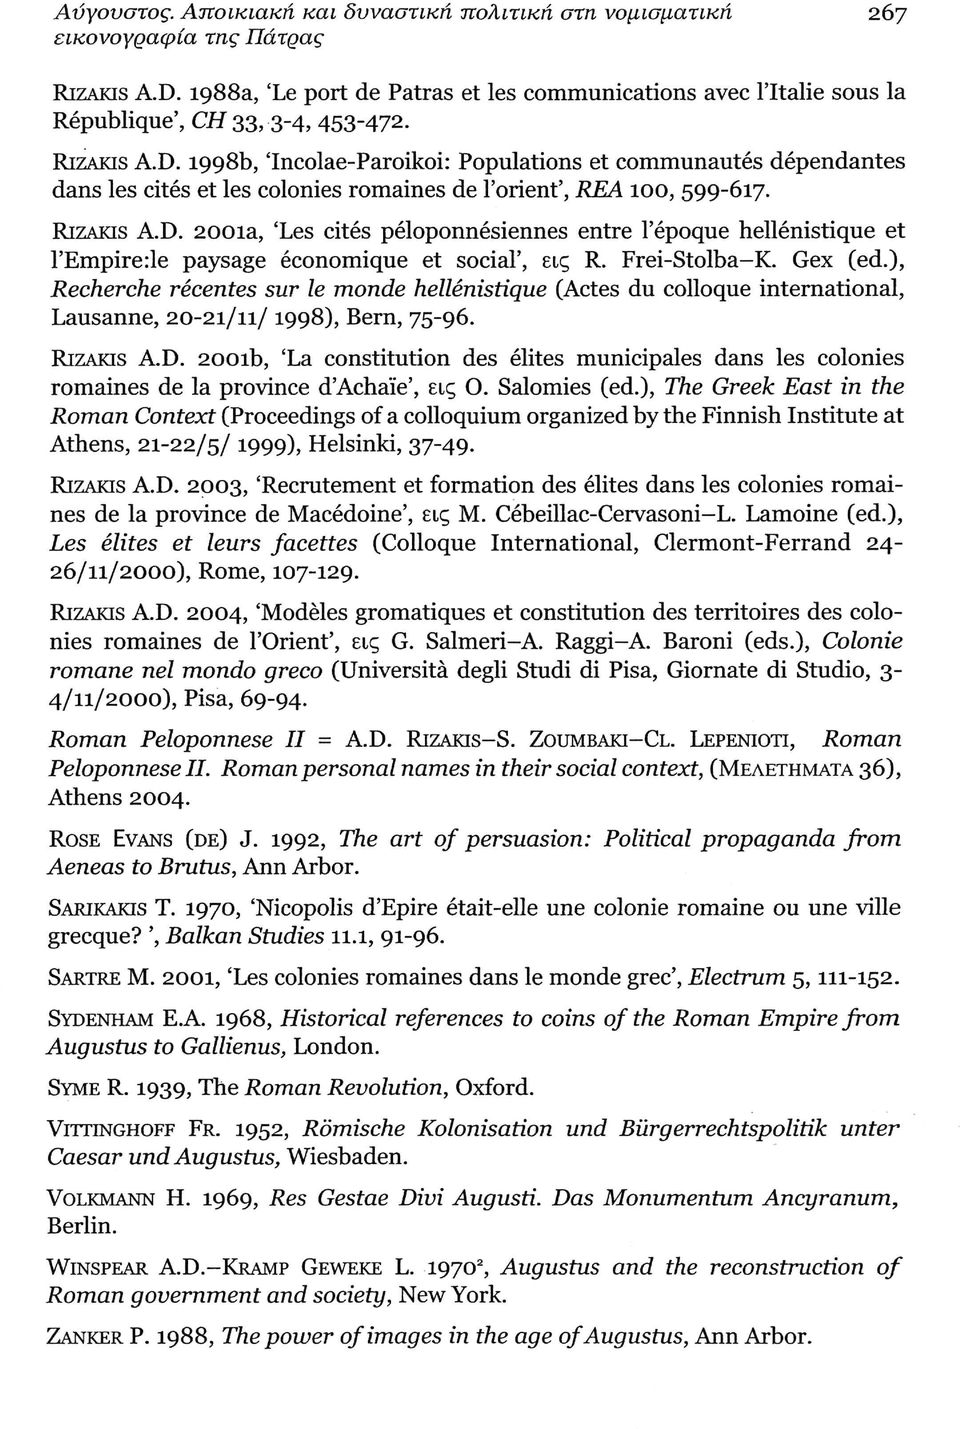 1998b, 'Incolae-Paroikoi: Populations et communautés dépendantes dans les cités et les colonies romaines de l'orient', REA 100, 599-617. RiZAKis A.D.